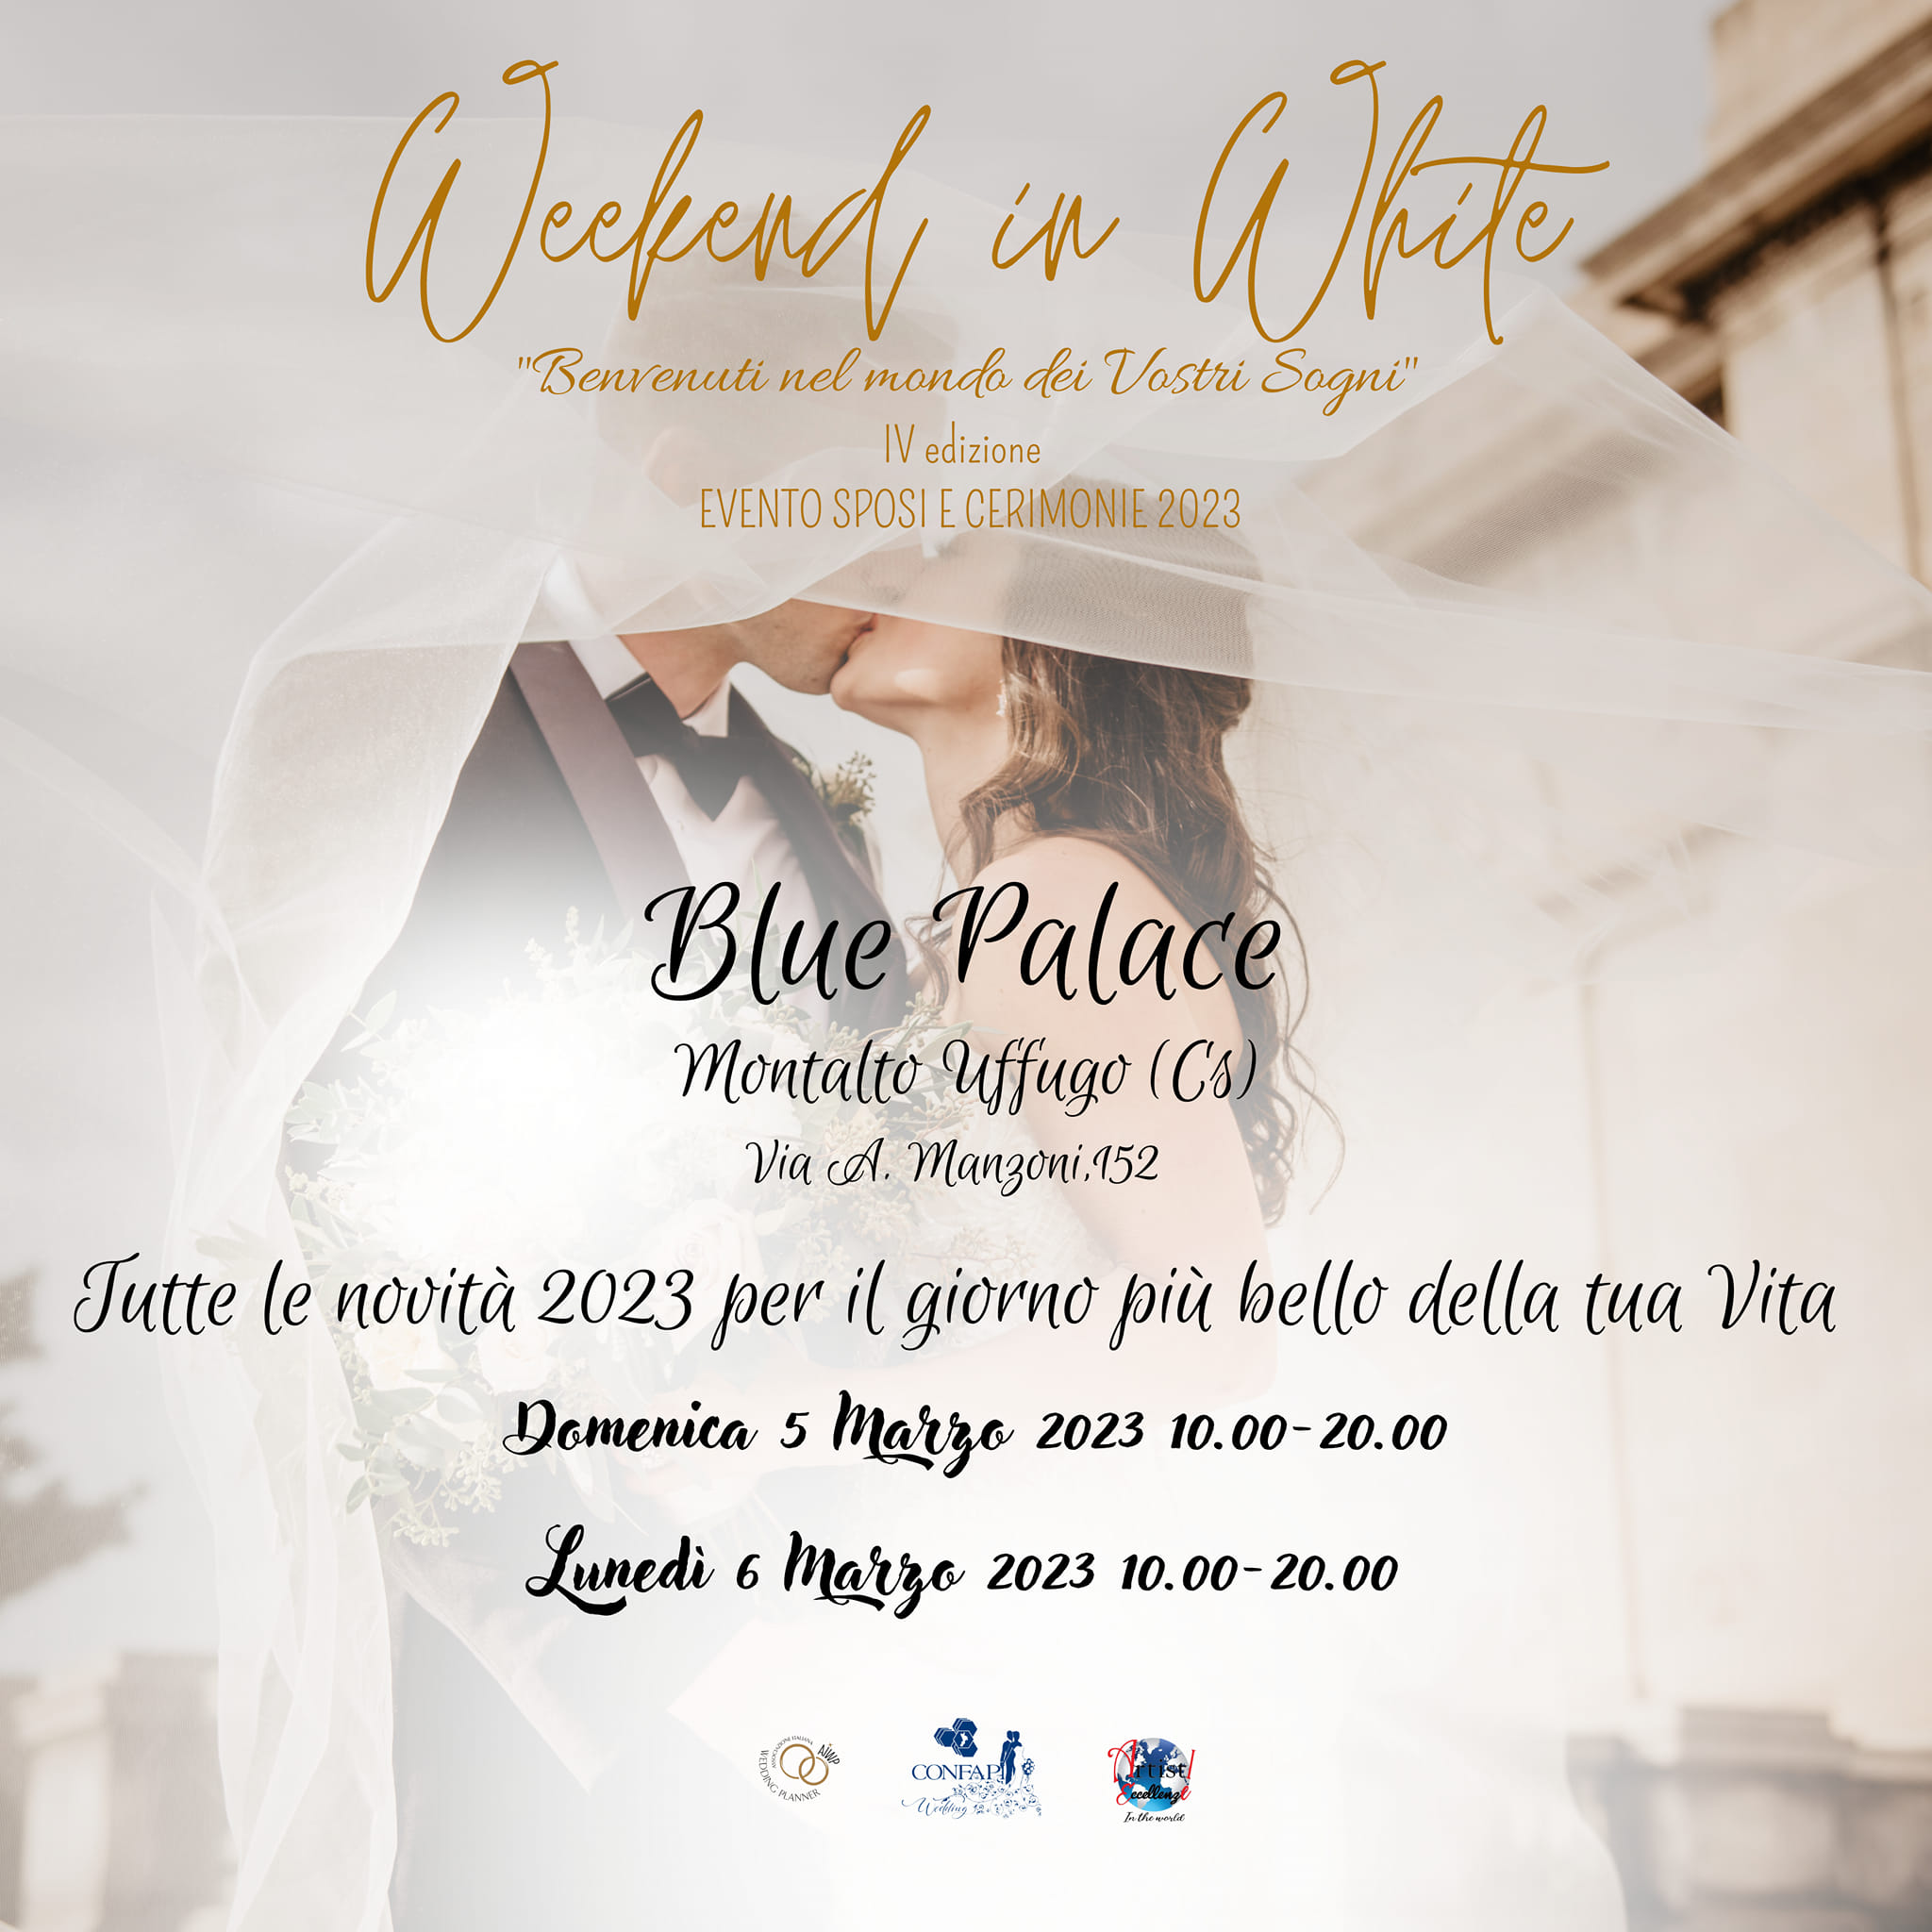 Weekend in white, la IV edizione dell’evento sul destination wedding sarà a Montalto